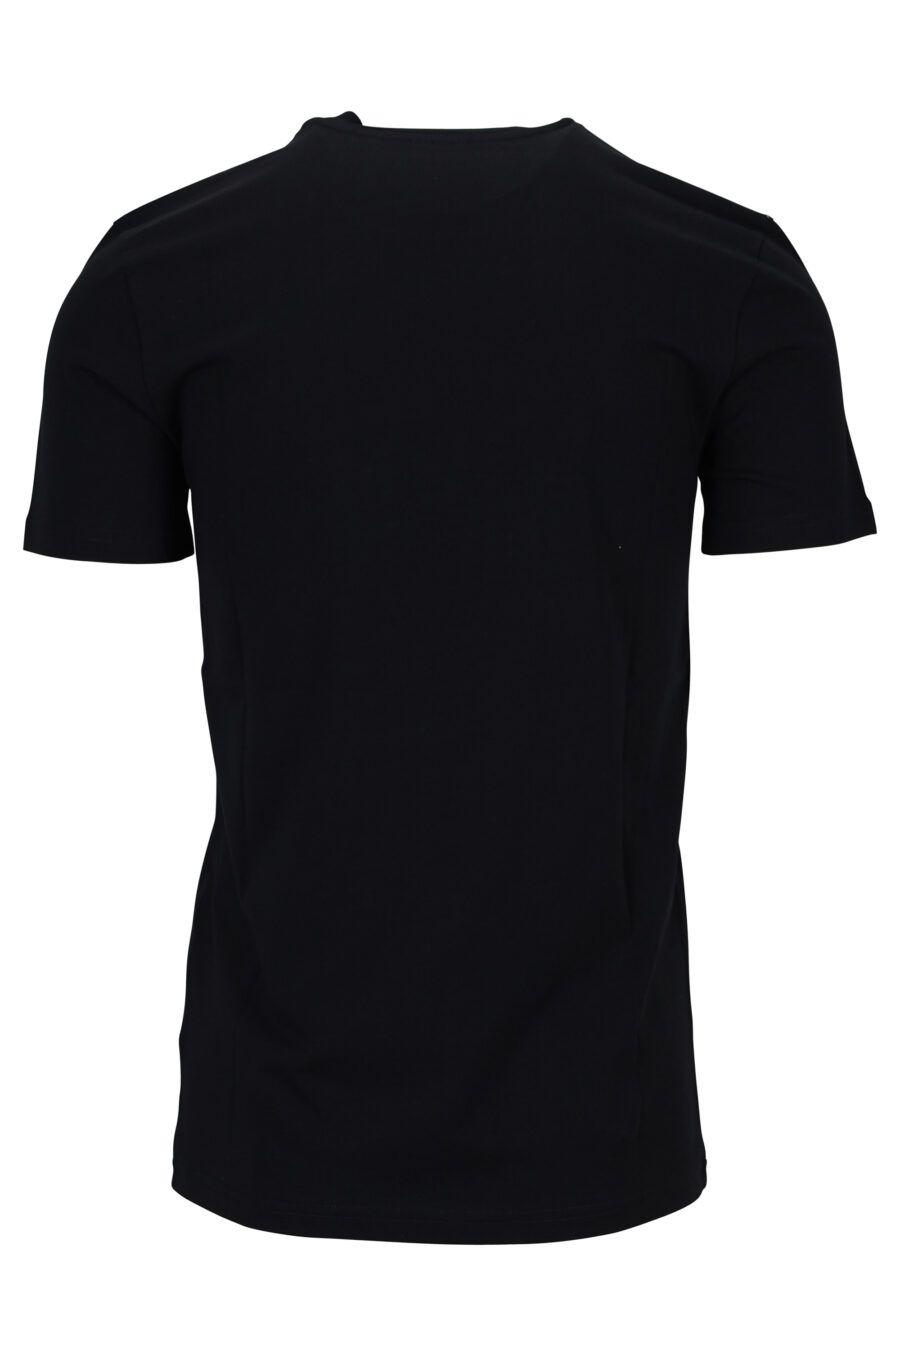 T-shirt preta de algodão orgânico com maxilogue branco - 889316648973 1